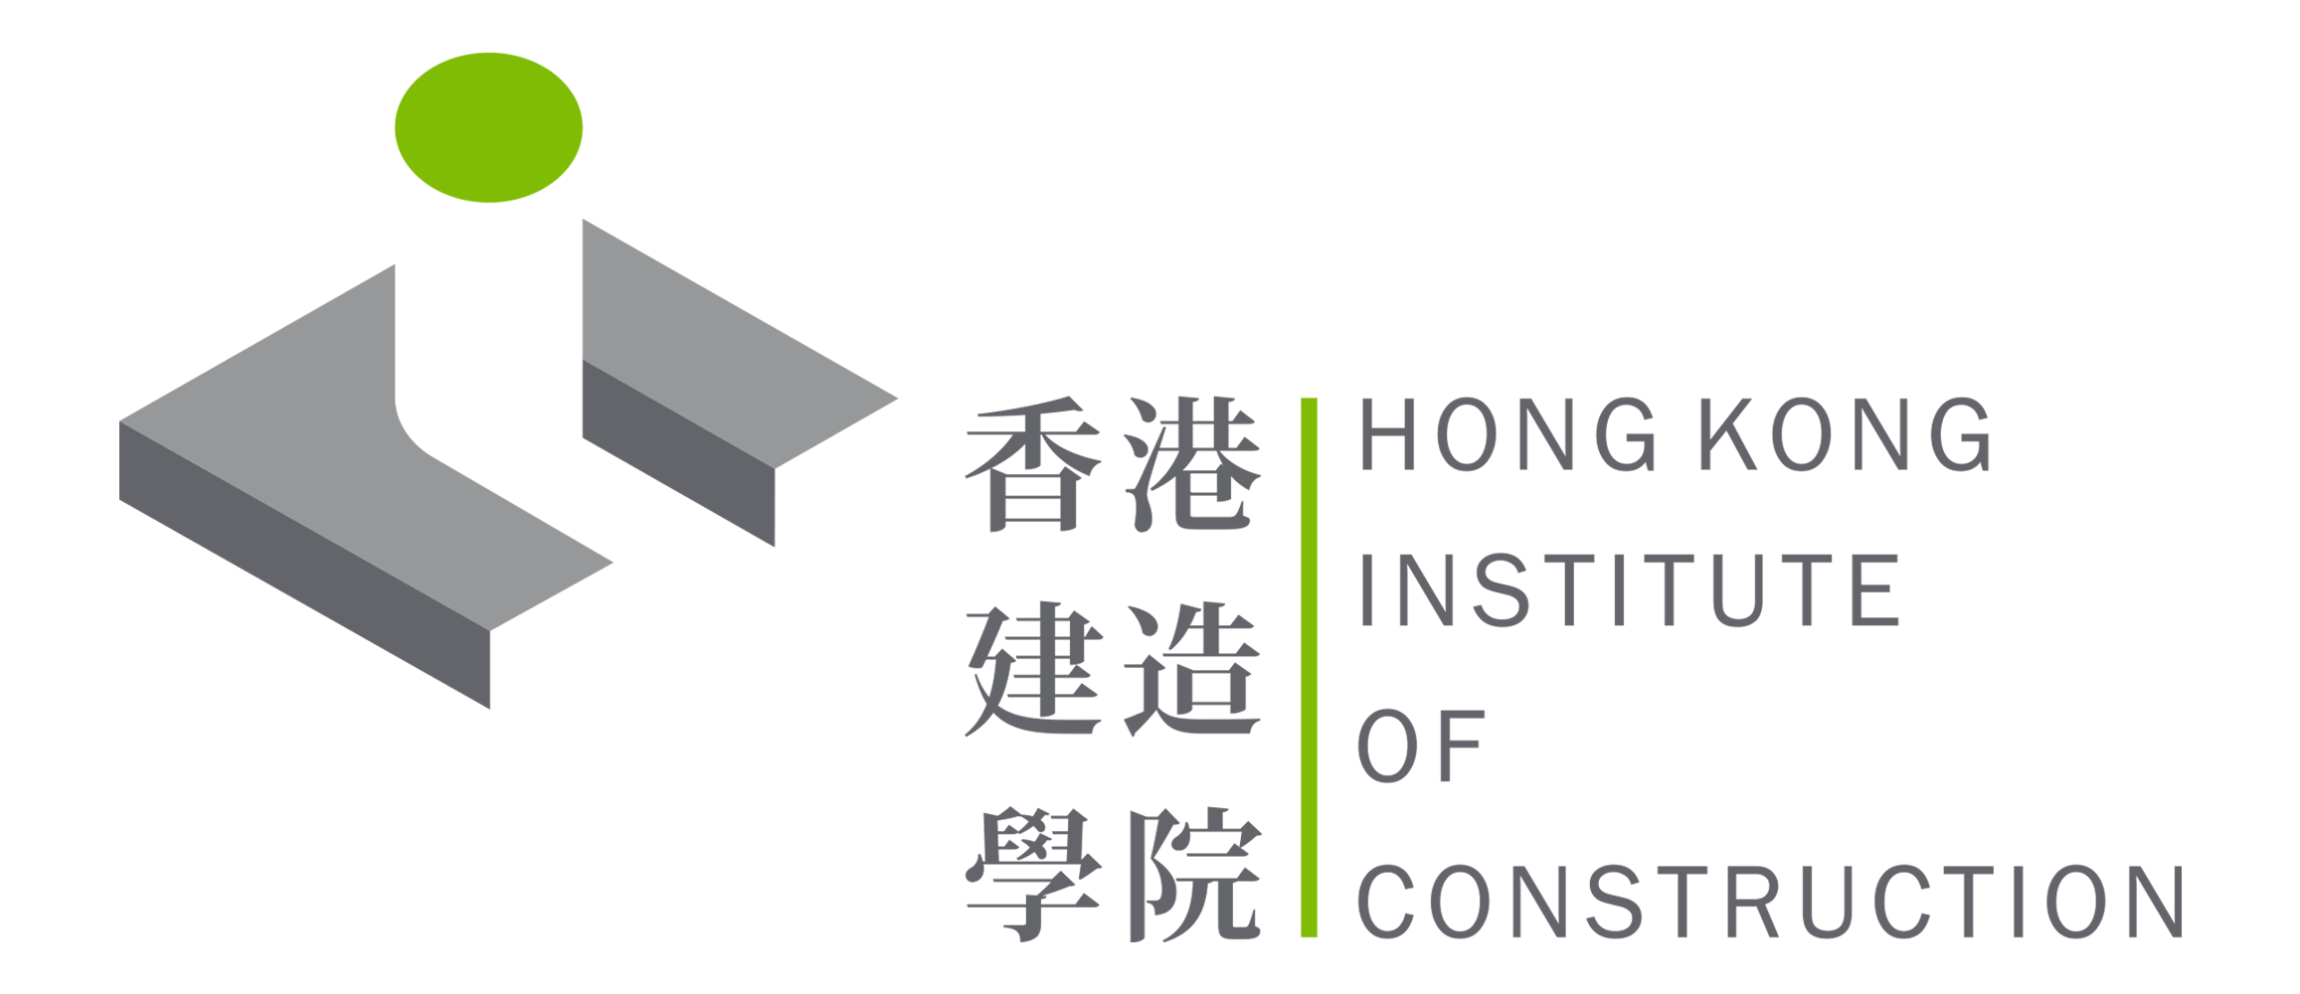 本頁圖片/檔案 - hkic_logo